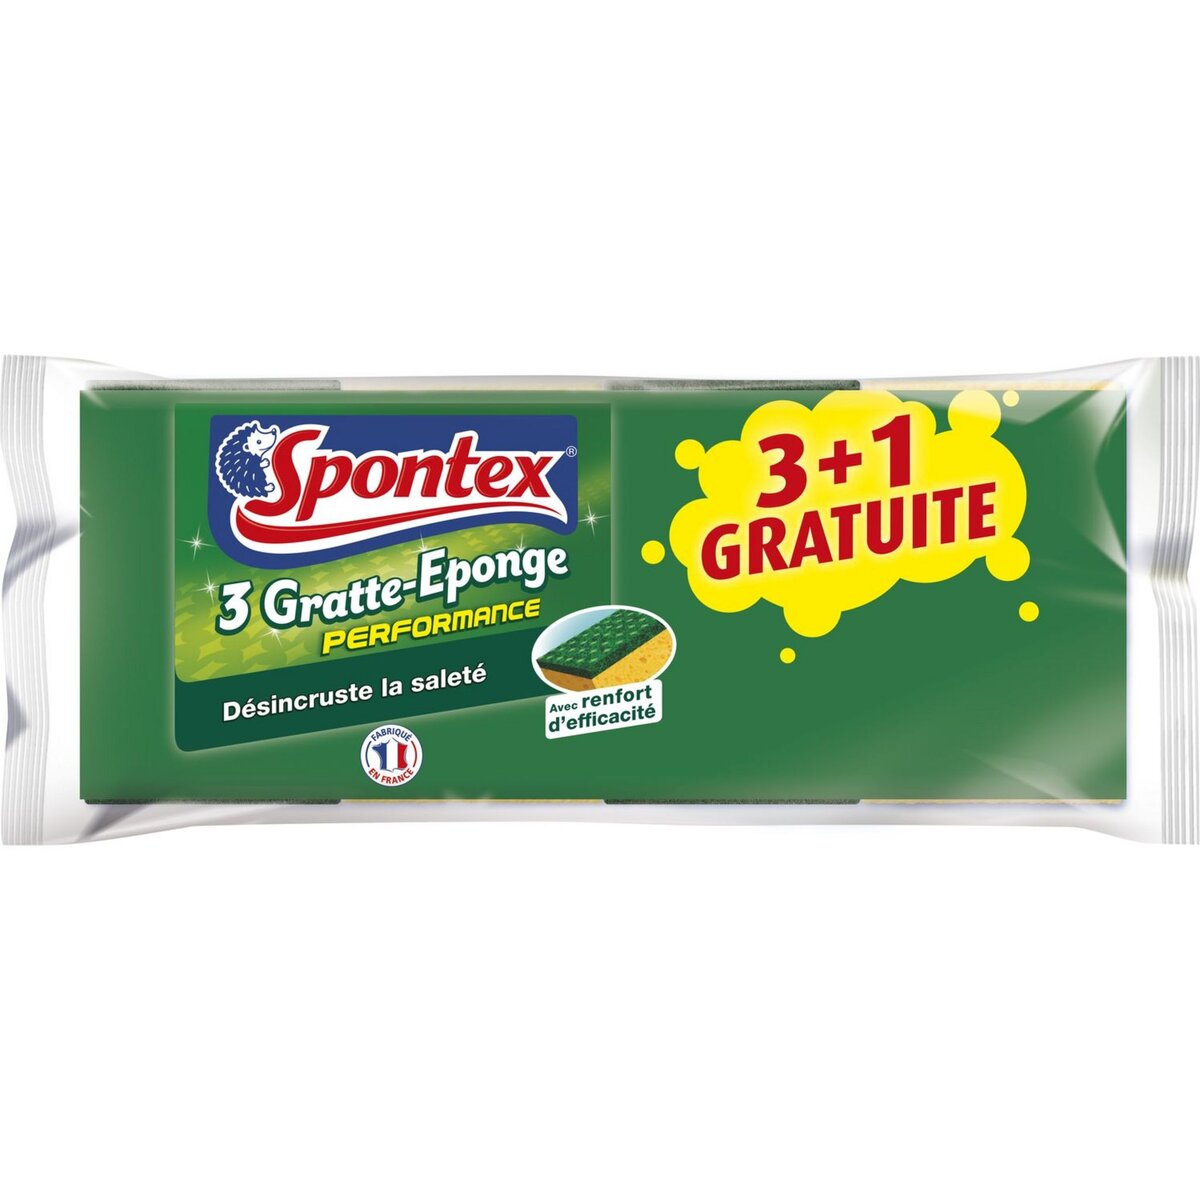 SPONTEX 3 GRATTE EPONGE PERFORMANCE + 1 GRATUITE 3 éponges + 1 gratuite